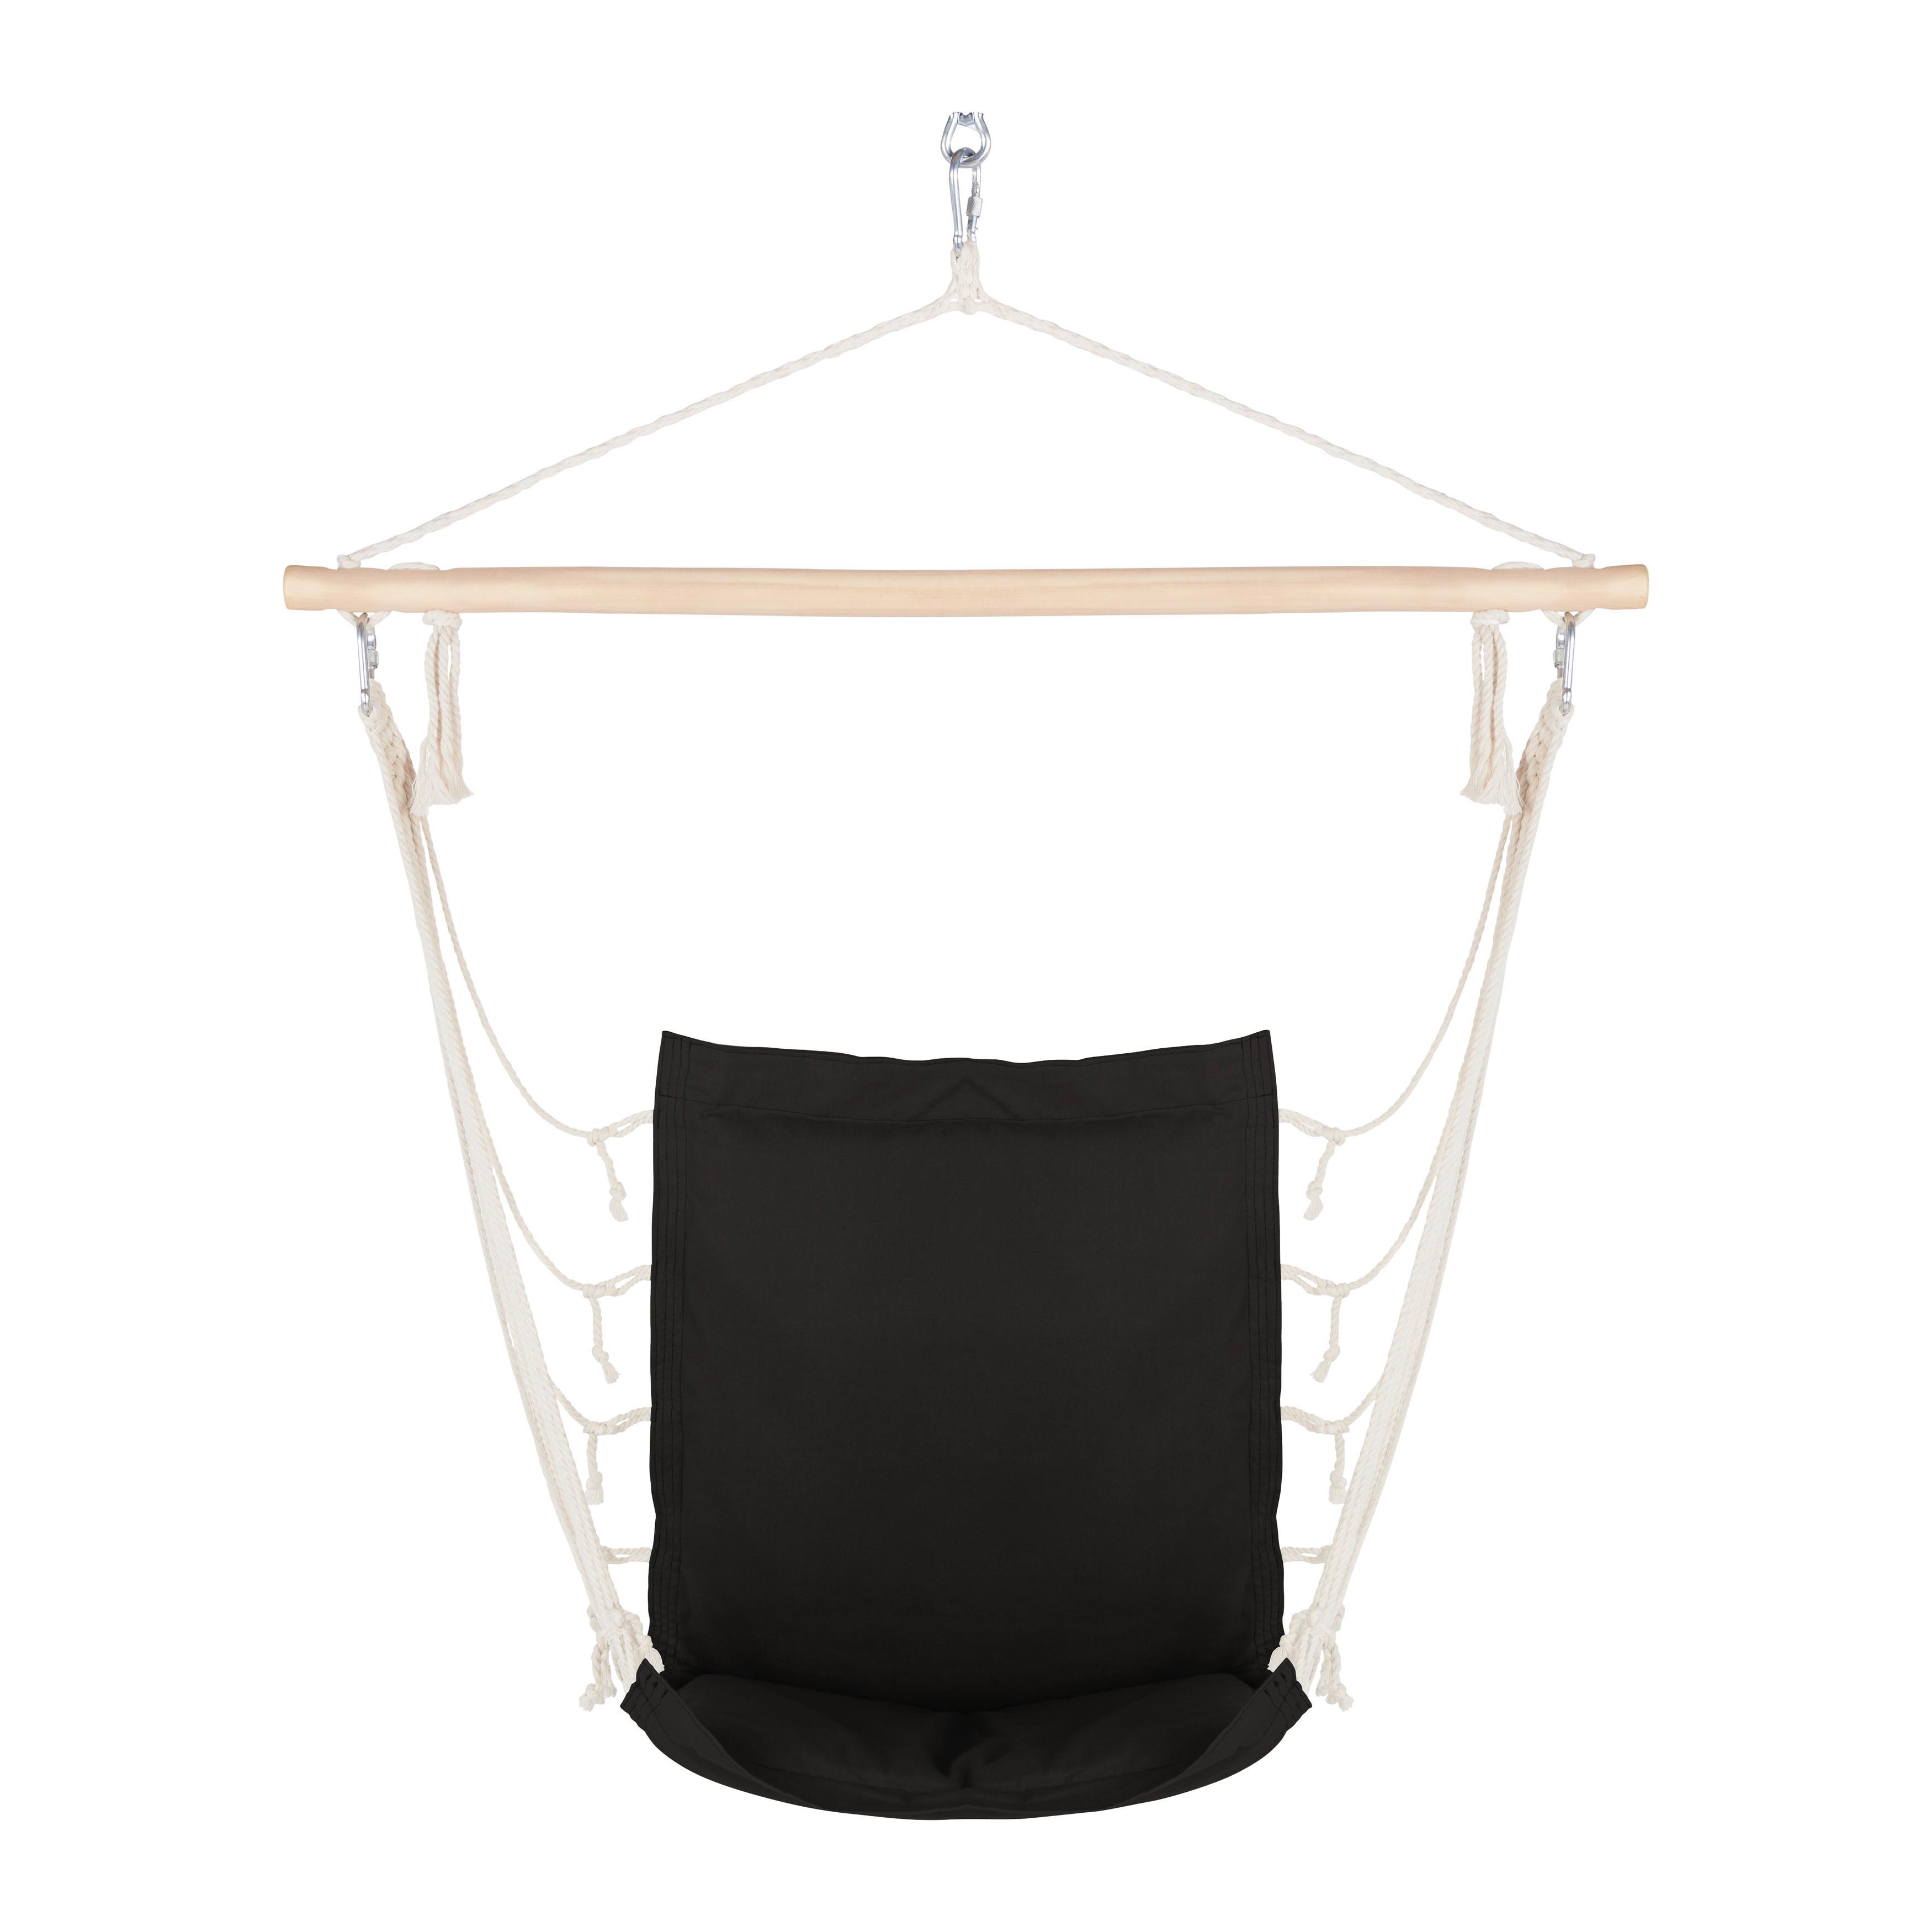 Viseč Sedež Relax, Črna - črna/naravne barve, tekstil/les (100/47cm) - Modern Living